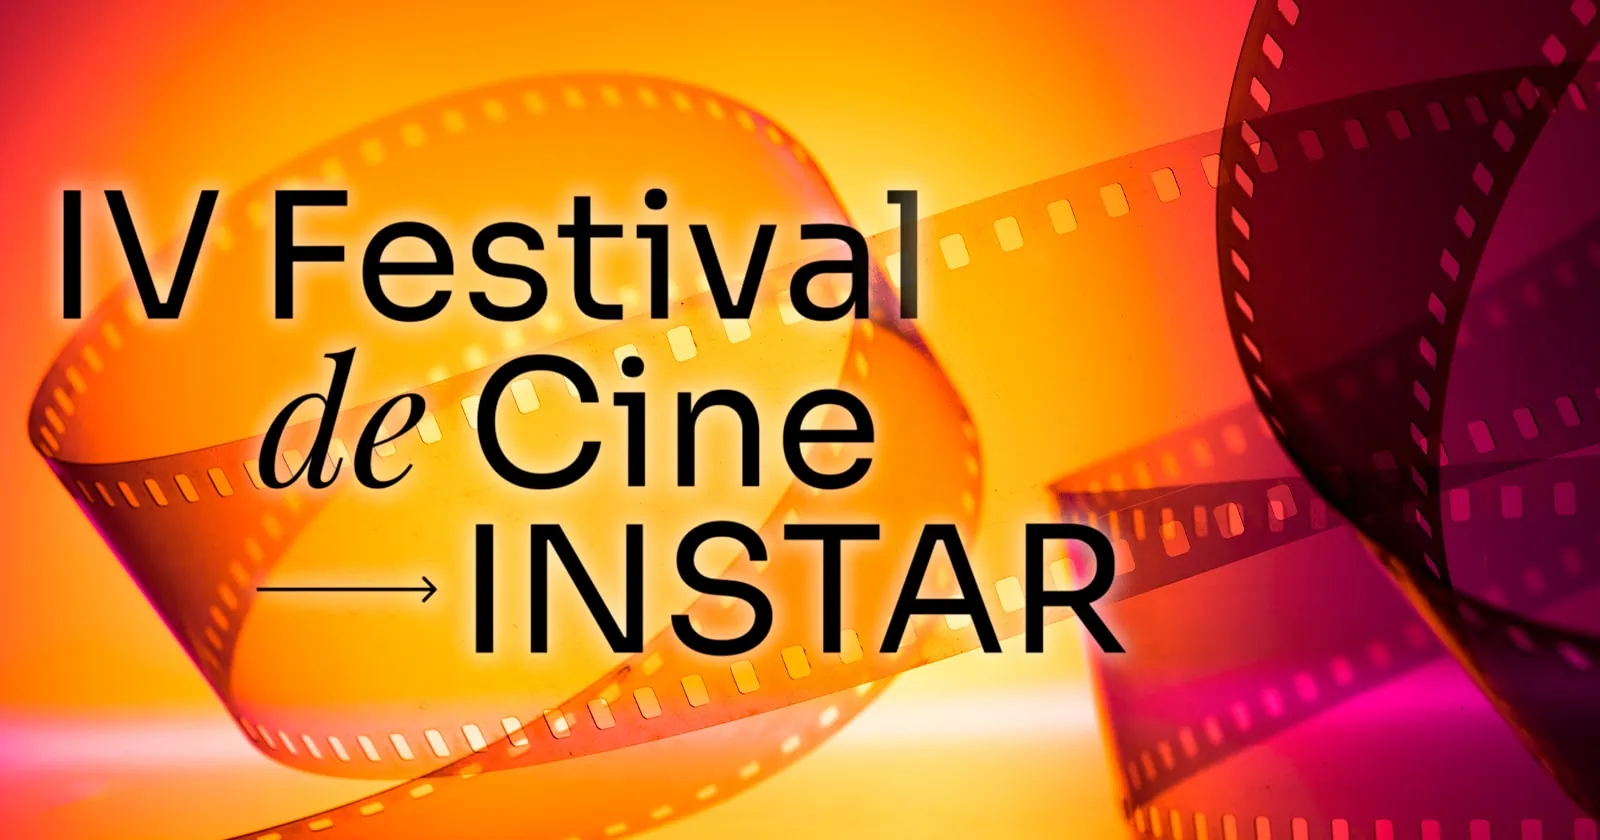 Audiovisuales Cubanos Obtienen Galardones en el IV Festival de Cine INSTAR